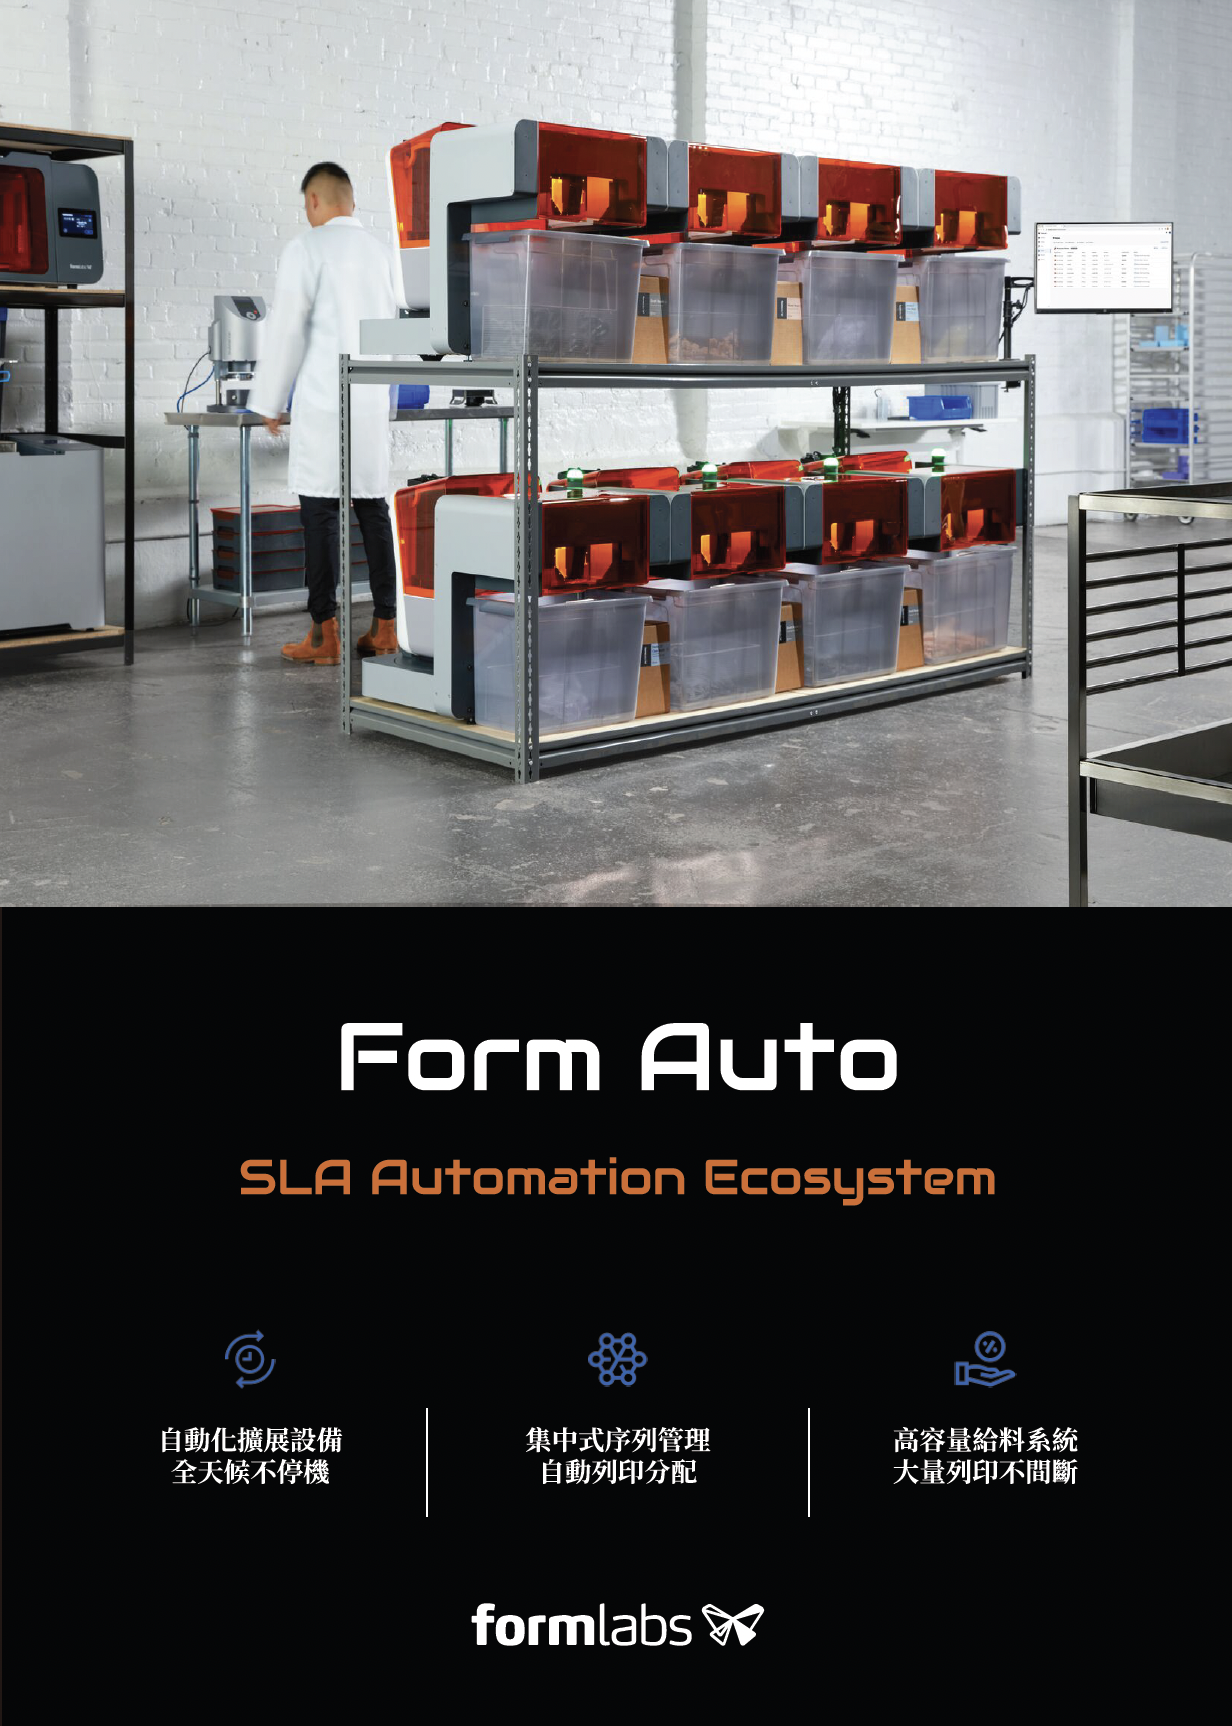 Form Auto 自動化生產系統中文型錄